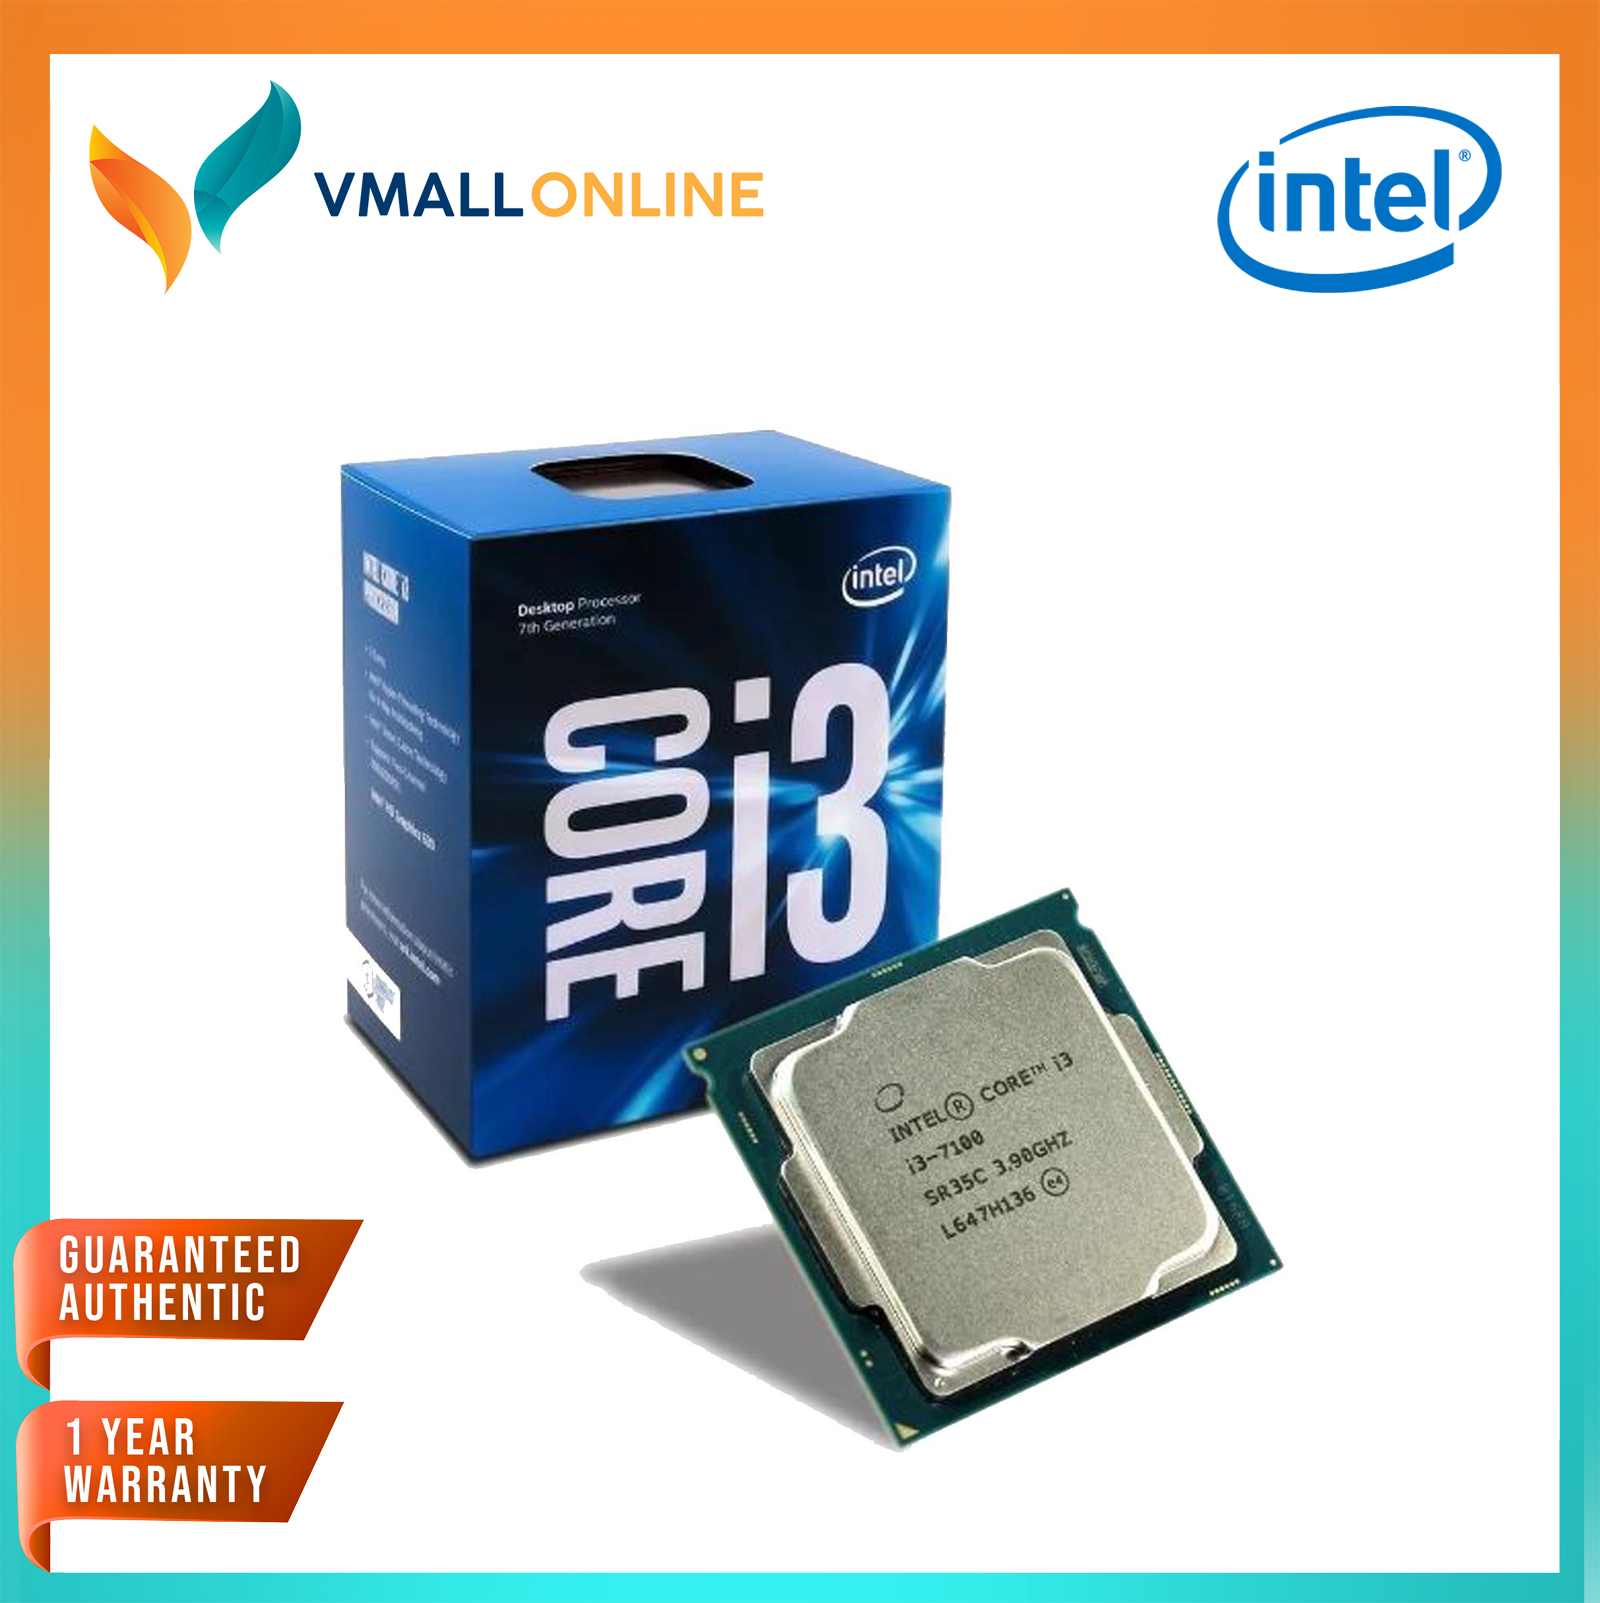 Интел 7100. Процессор Intel Core i3-7100 Kaby Lake. Intel(r) Core(TM) i3-7100 CPU @ 3.90GHZ. Intel Core i3-7100 3.9GHZ. Intel(r) Core(TM) i3-7100 CPU @ 3.90GHZ 3.90 GHZ.